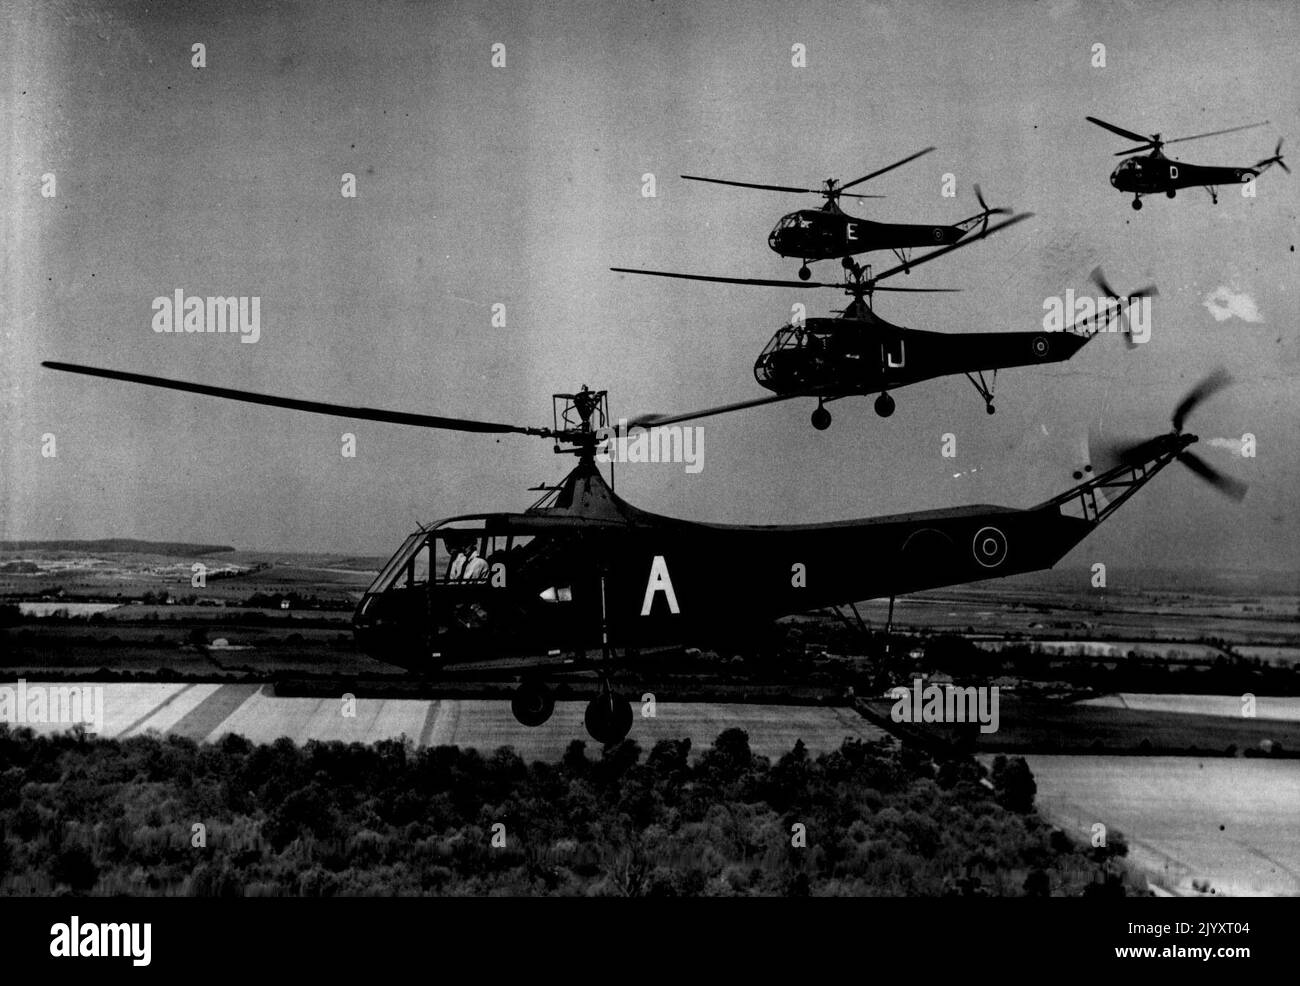 Hubschrauber sind hier, um zu bleiben: Der R.A.F.-Dienst „Go Any Way“ -- Eine Formation von R.A.F-Hubschraubern im Flug Andrews Planet Apr. 23 1945 PN Zensor Nr.: Senkrecht vom Boden oder vom Dach aufragend, rückwärts, vorwärts oder seitwärts fliegend, Und der Sikorsky R4B-Hubschrauber, der nun zur Entwicklung eines R.A.F.-Hubschrauberservices beiträgt, schwebt, um Passagiere abzusetzen oder abzuholen, hat gezeigt, dass diese Flugzeuge, mit bis zu bemerkenswerten Vorteilen für spezielle Zwecke, eine wichtige Rolle bei den Luftanlügeaktivitäten Großbritanniens nach dem Krieg spielen werden. Diese Fotos wurden während des Trainings an einem R.L.F. Schoo aufgenommen Stockfoto